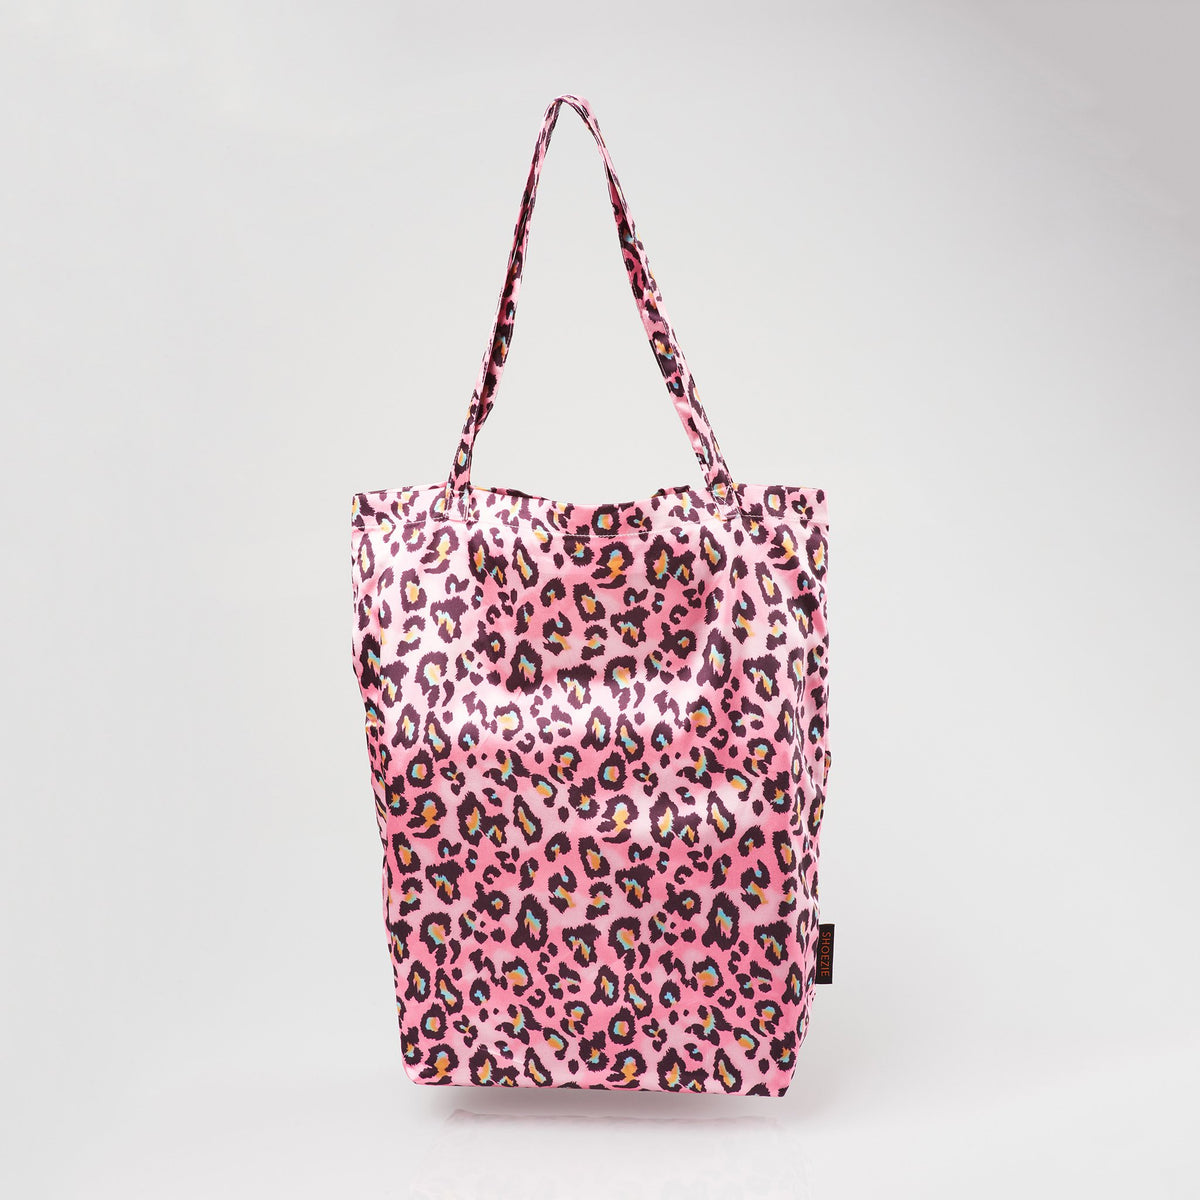 Shoezie Tote - Pink Leopard